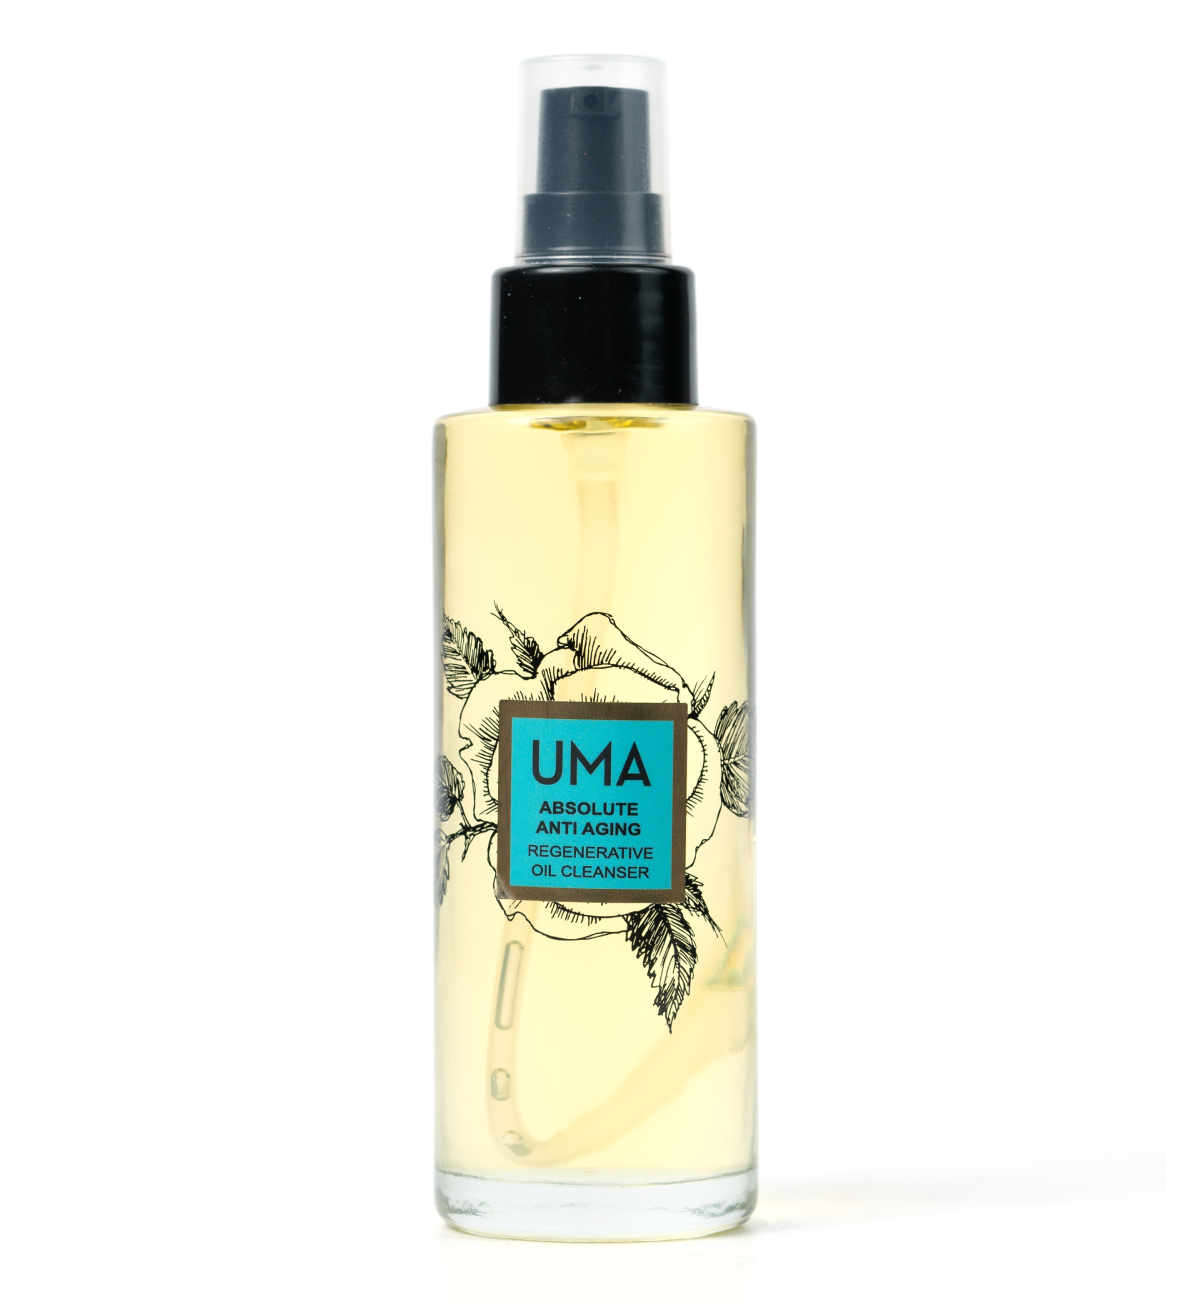 UMA Absolute Anti Aging Regenerative Oil Cleanser